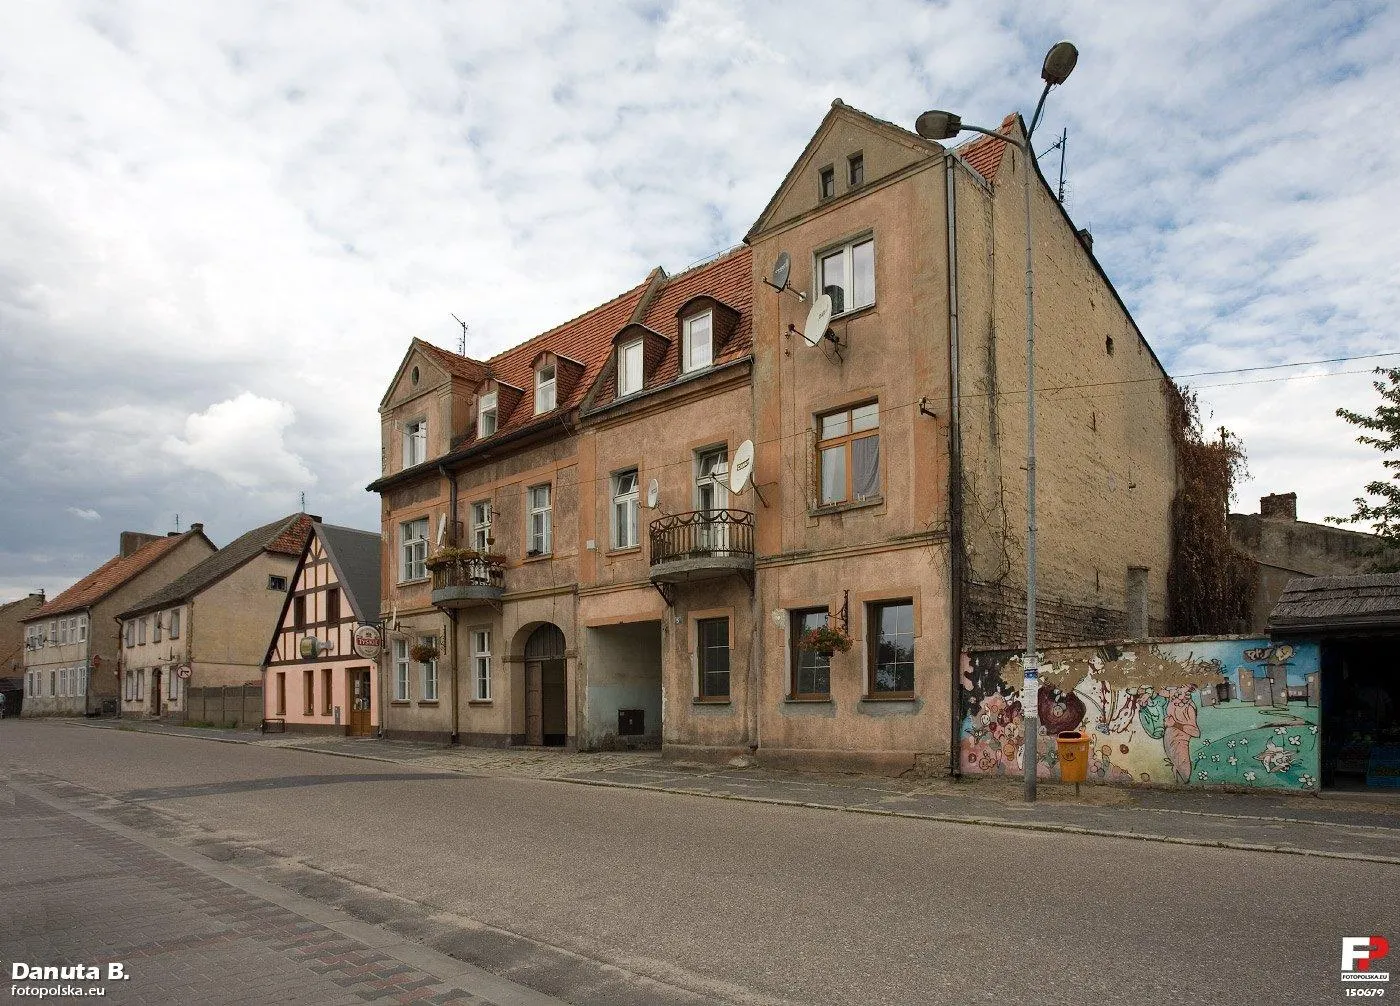 Photo showing: Wschodnia strona rynku Nowego Miasta ze zróżnicowaną zabudową. Stare parterowe domy sąsiadują z eleganckimi kamienicami.